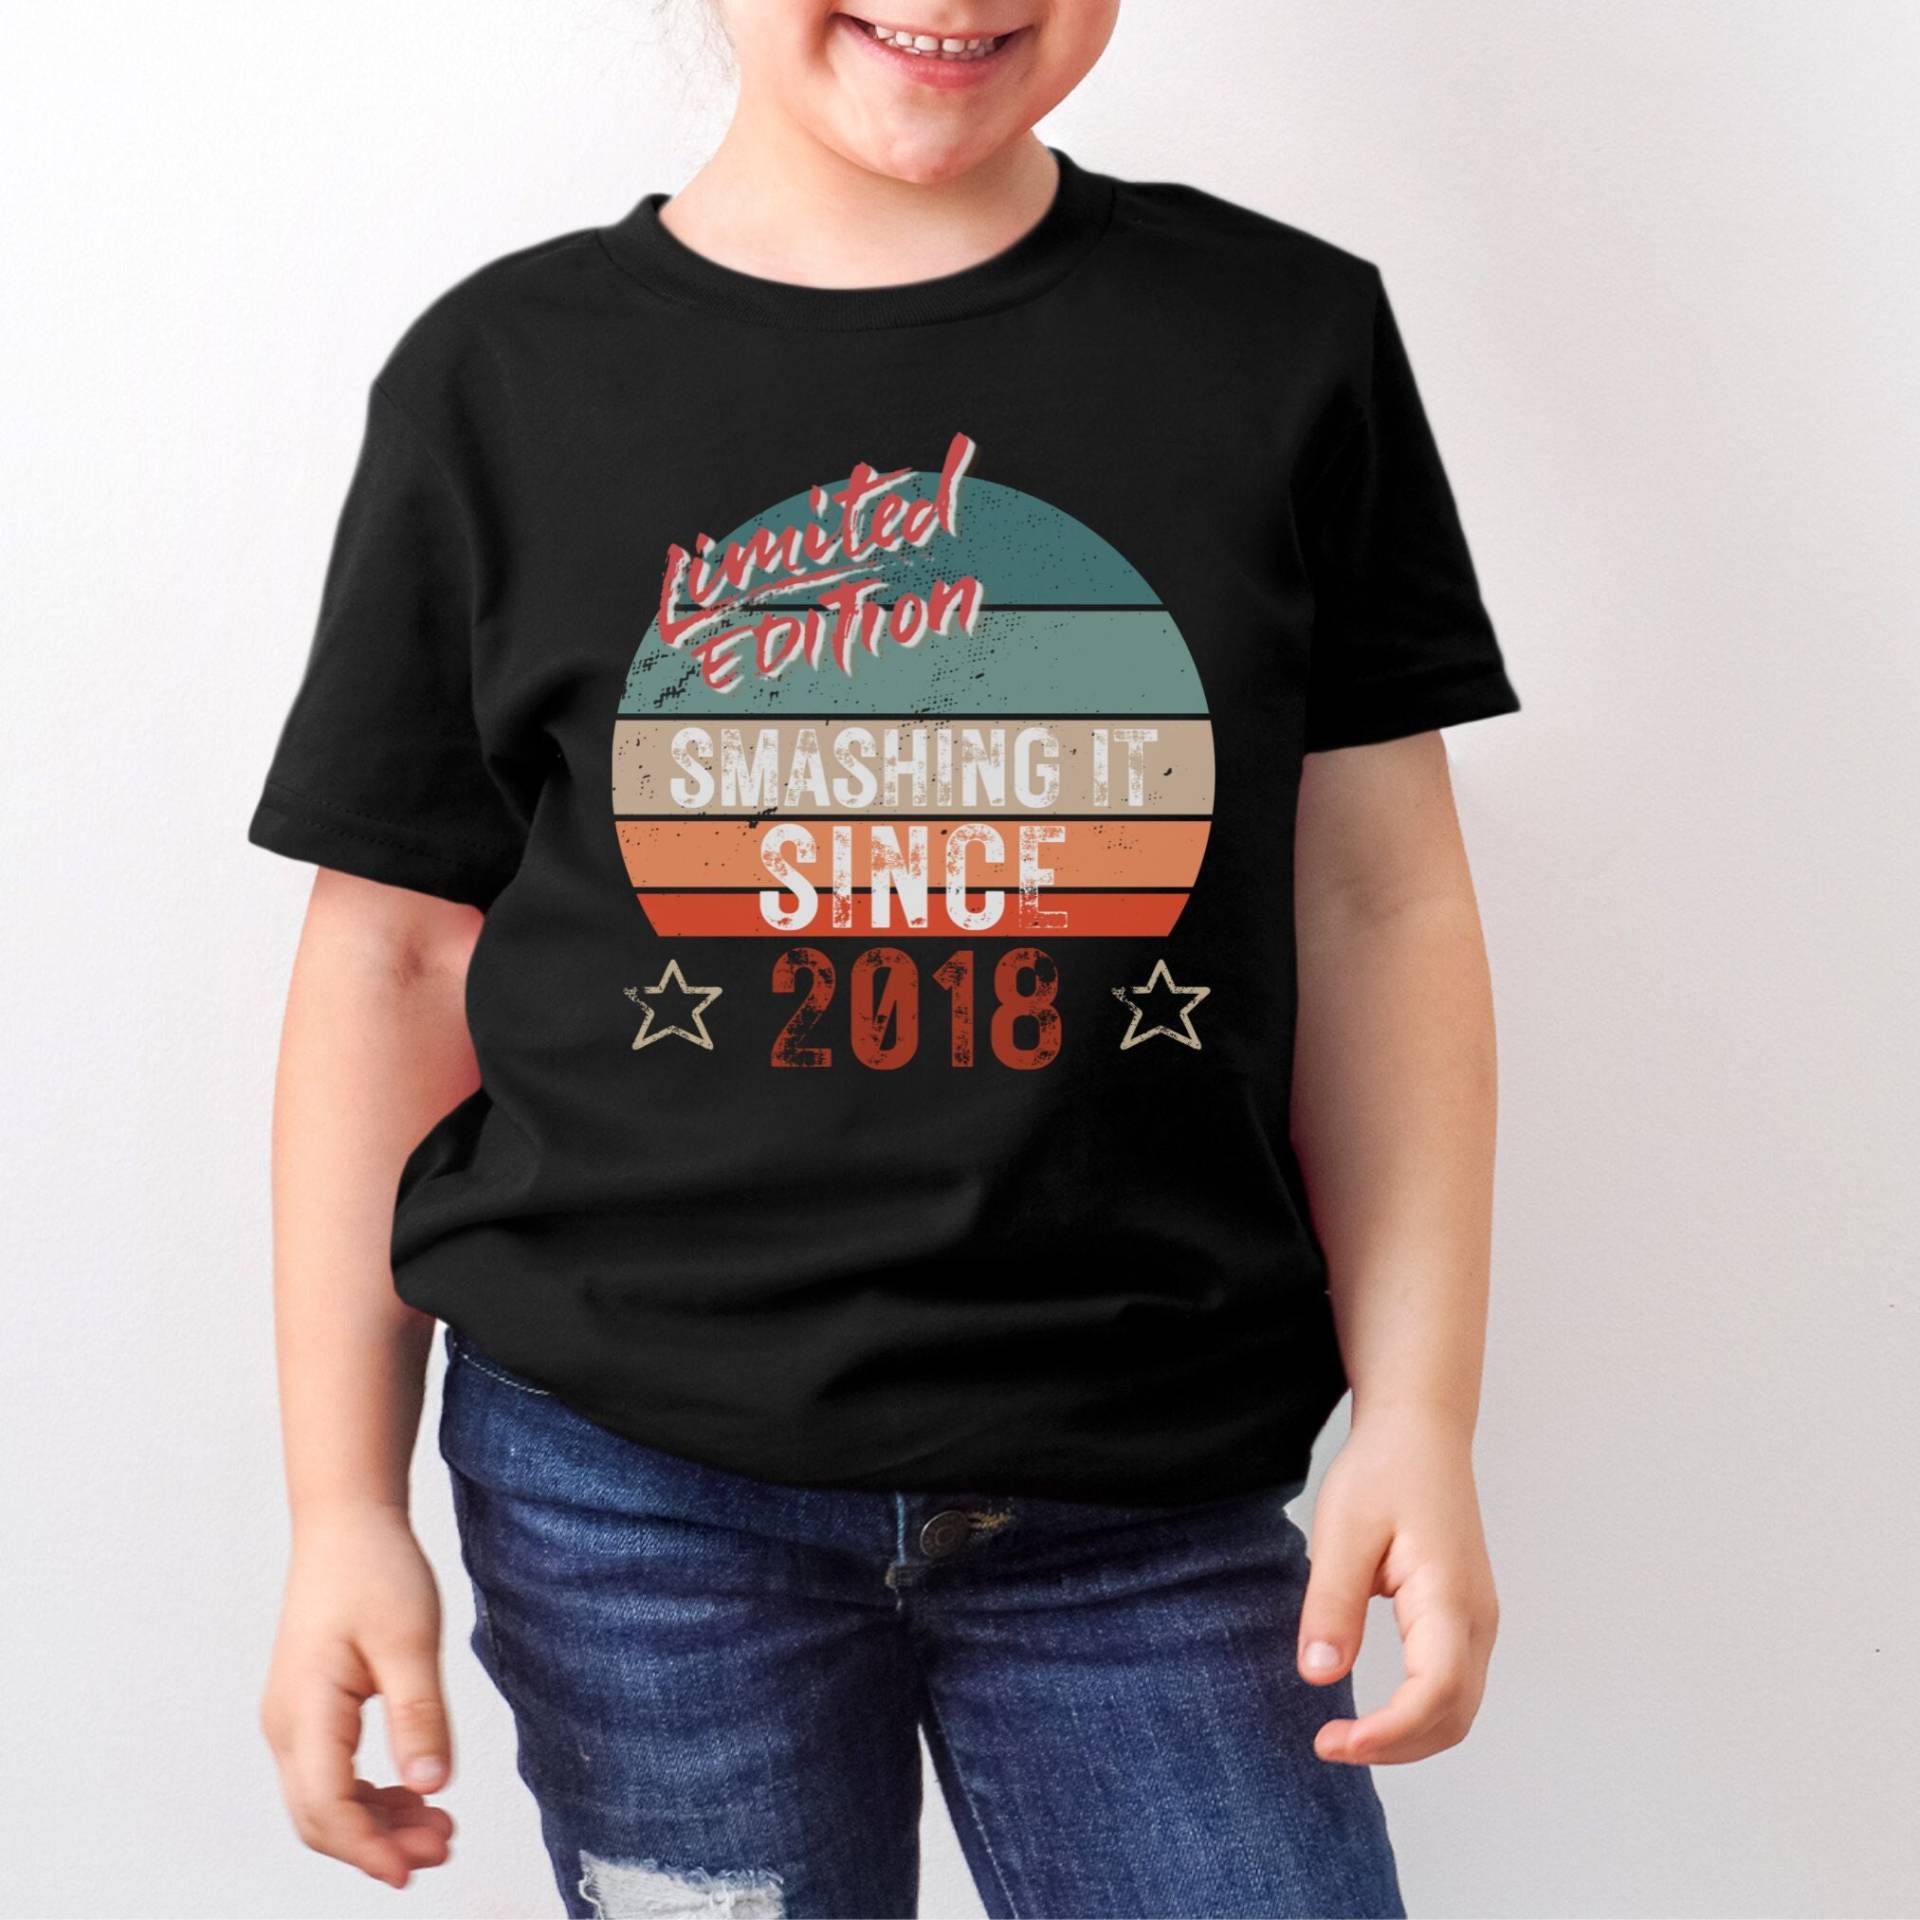 5. Geburtstagsgeschenk Geburtstag T Shirt Smashing It Since 2018 Limited Edition Shirts Für Jungen Mädchen Kinder von LJCustomTeesDesign